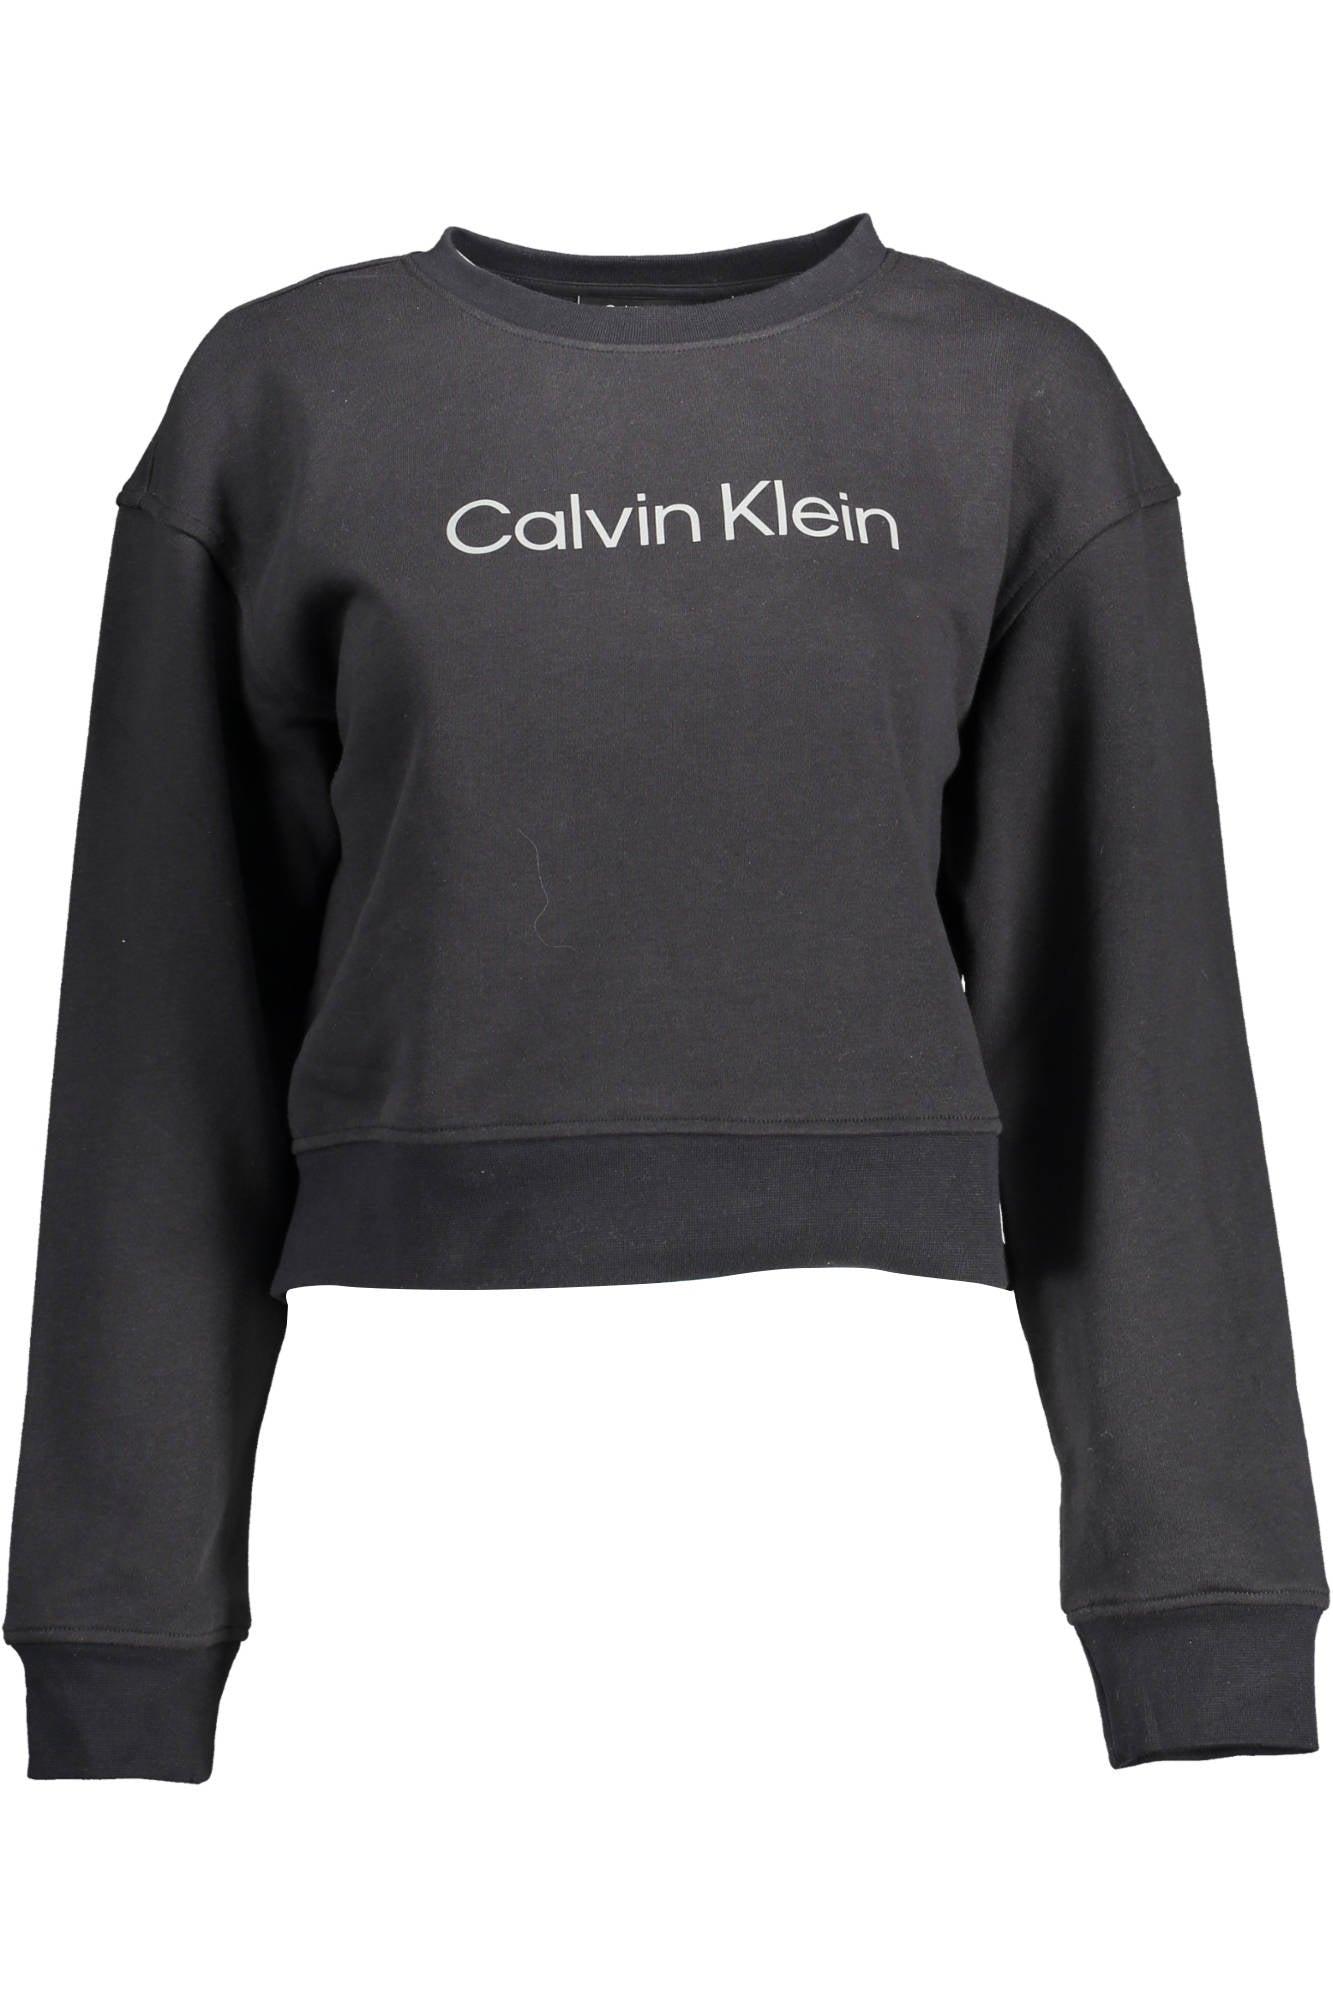 Calvin Klein Black Cotton Sweater | Lyst